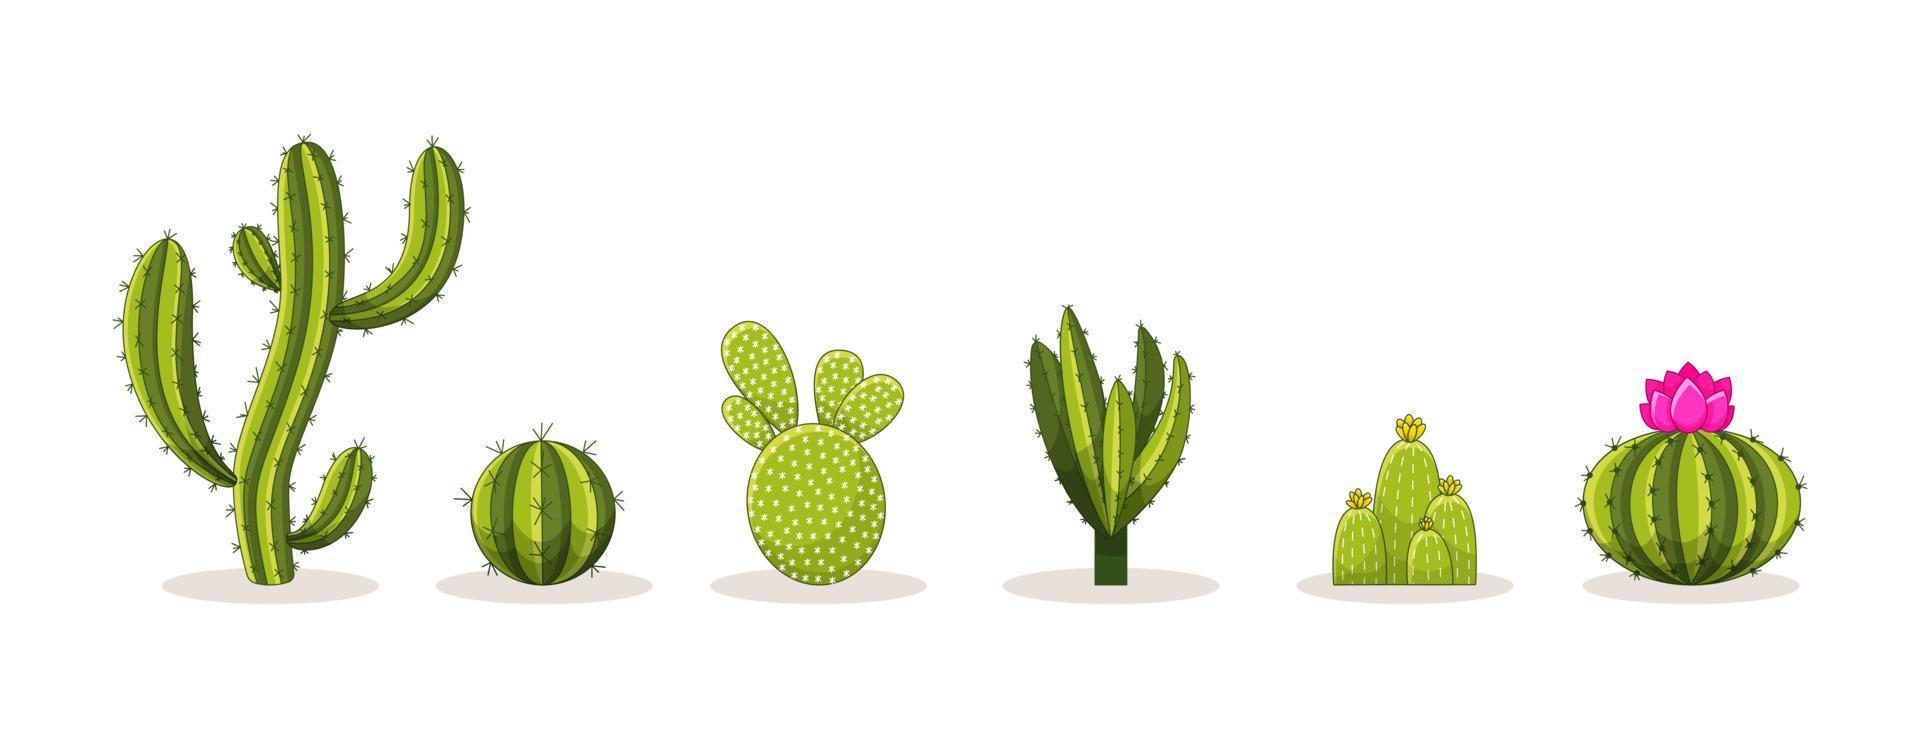 set van cactussen met doornen en bloemen. Mexicaanse groene plantcactus met stekels. element van de woestijn en het zuidelijke landschap. cartoon platte vectorillustratie. geïsoleerd op witte achtergrond vector